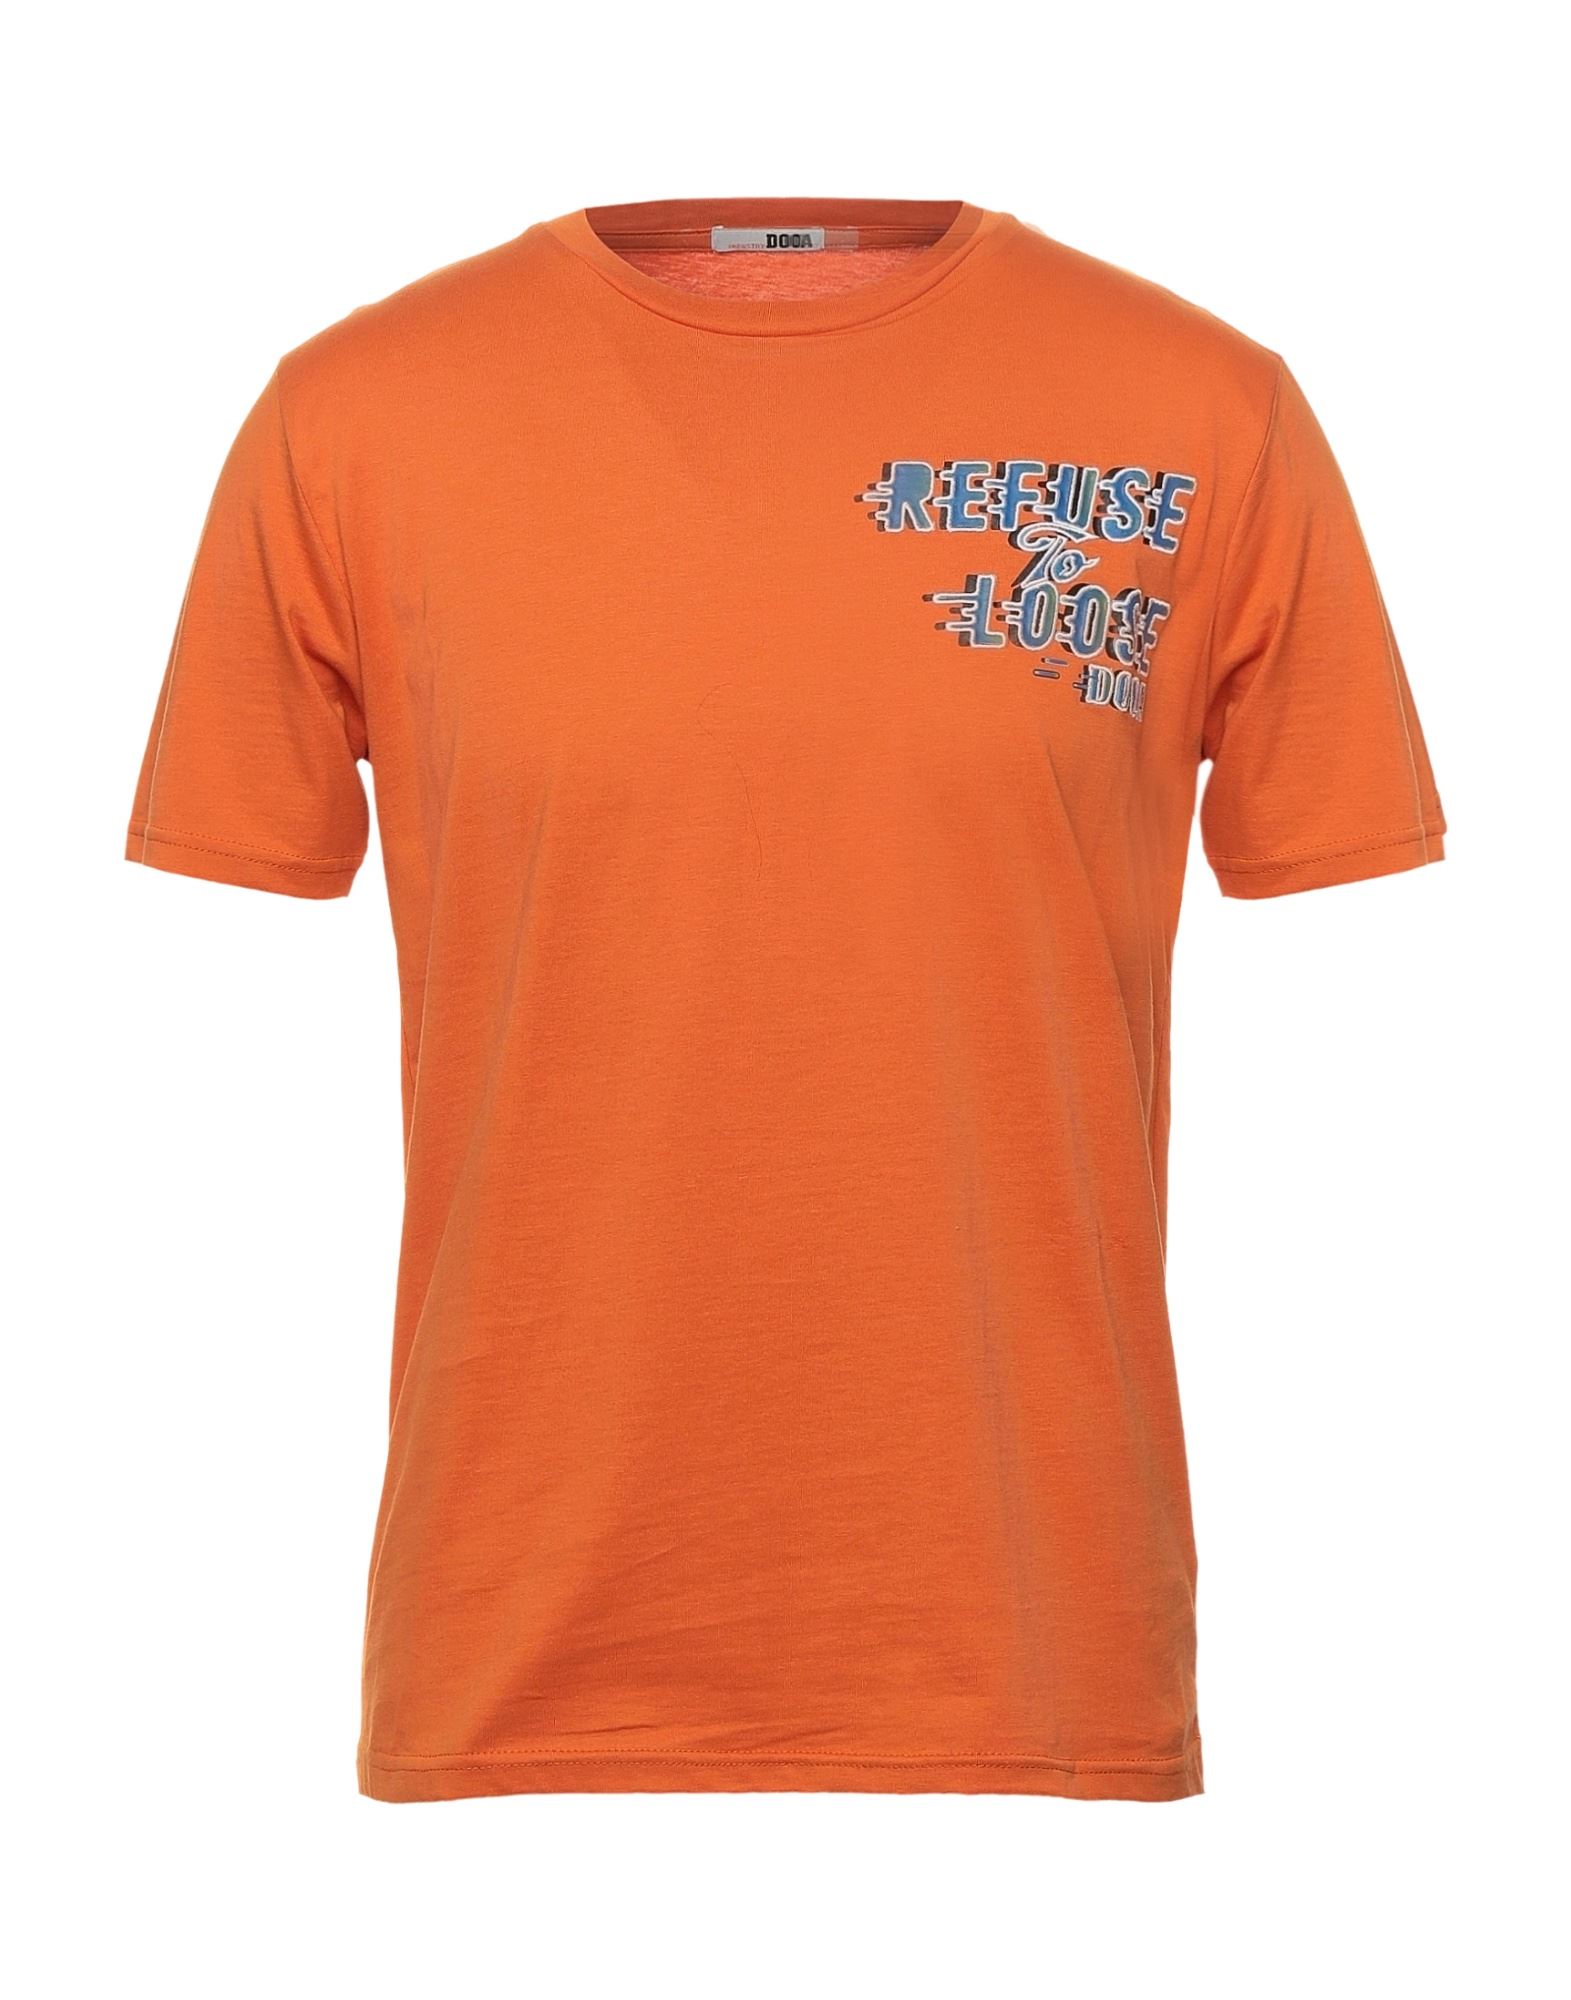 DOOA T-shirts Herren Orange von DOOA